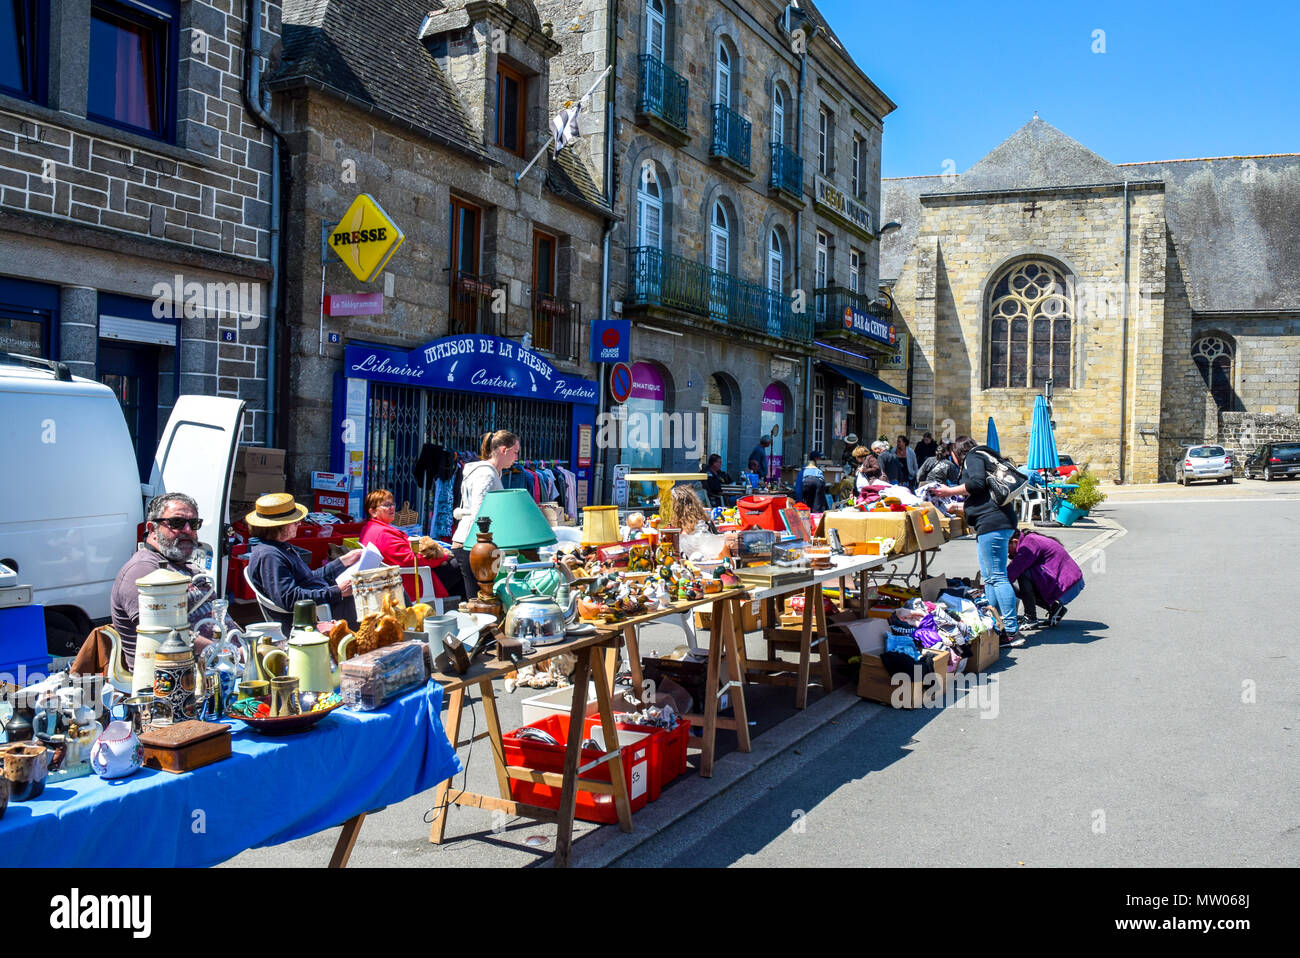 Un très beau jour de marché à la place de la ville dans la région de Rostrenan, Bretagne, France. Banque D'Images